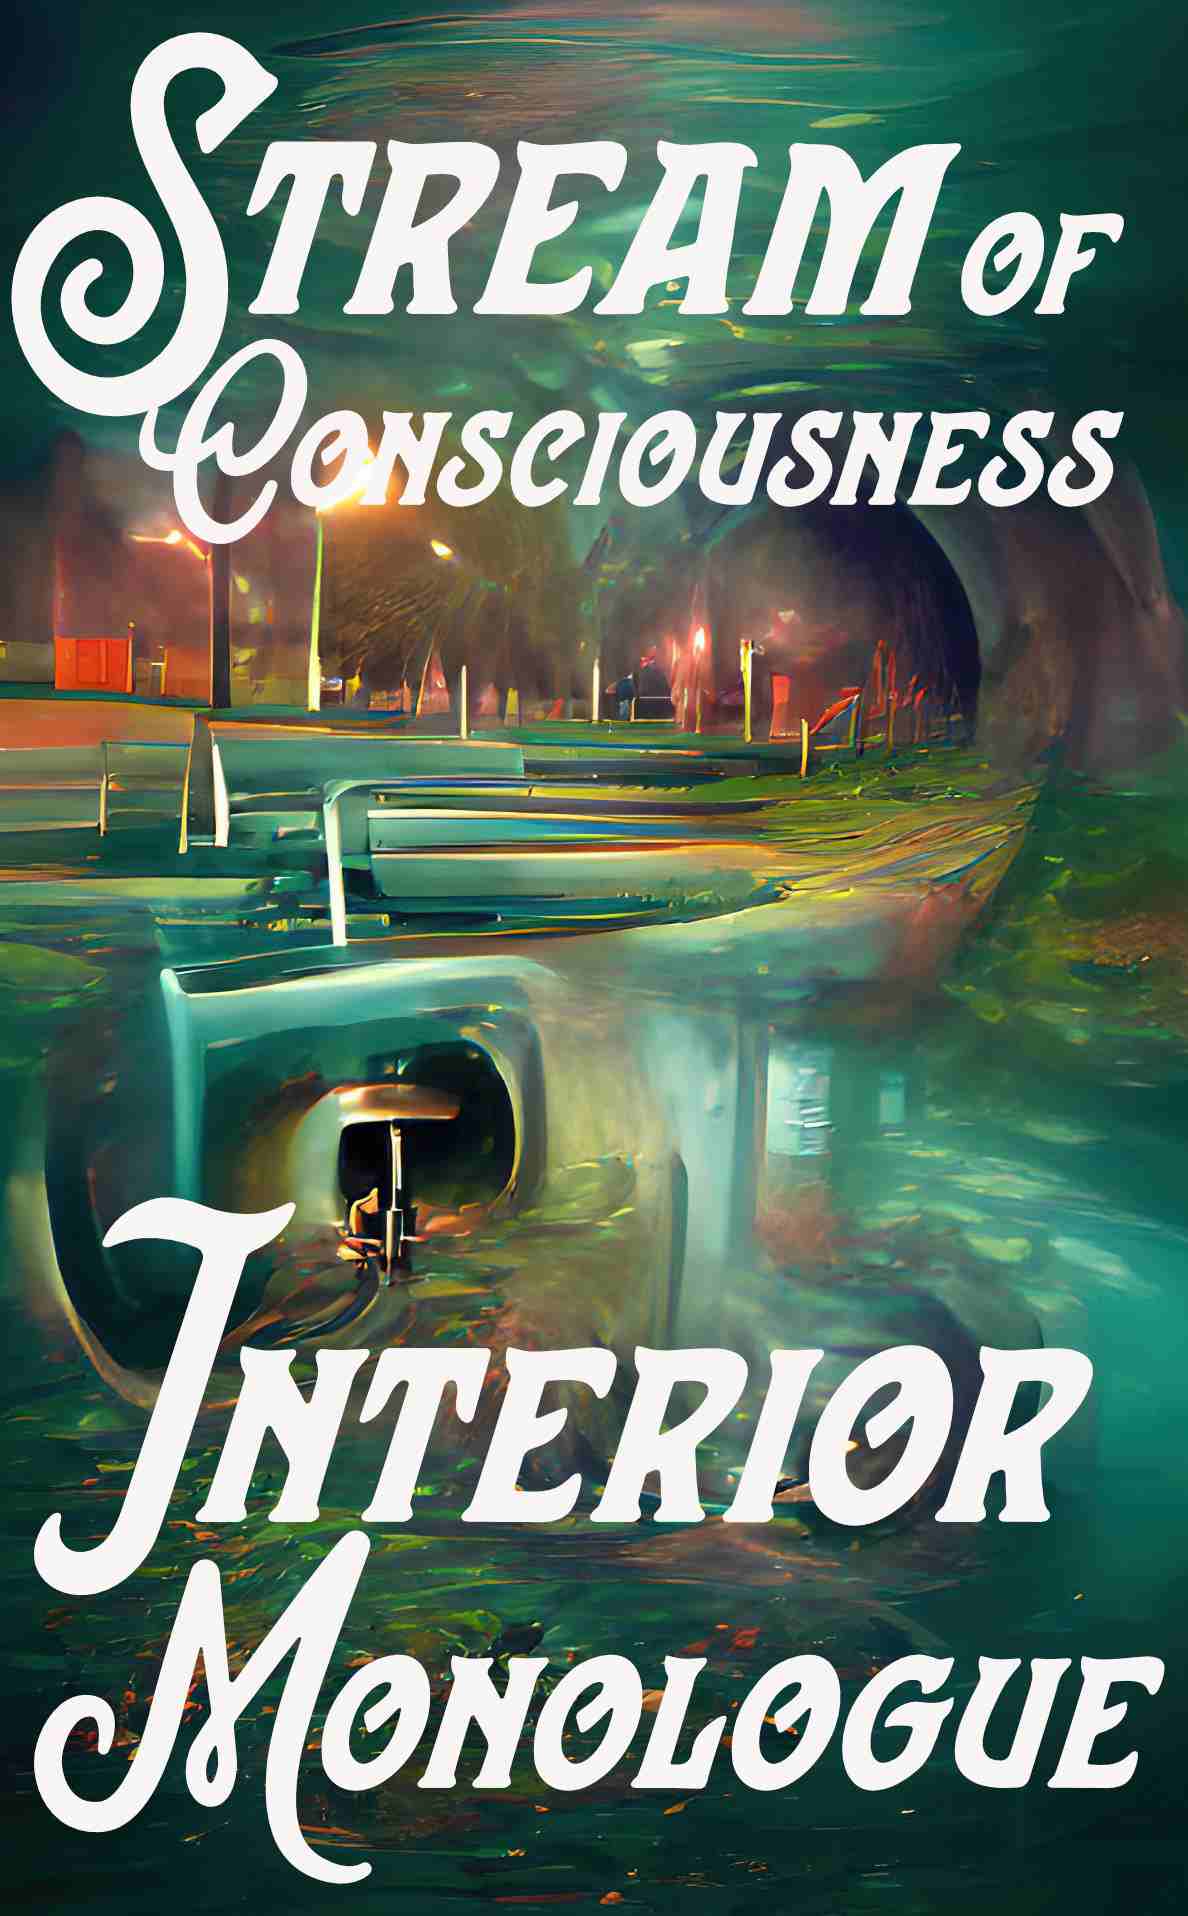 Stream of Consciousness and Interior Monologue